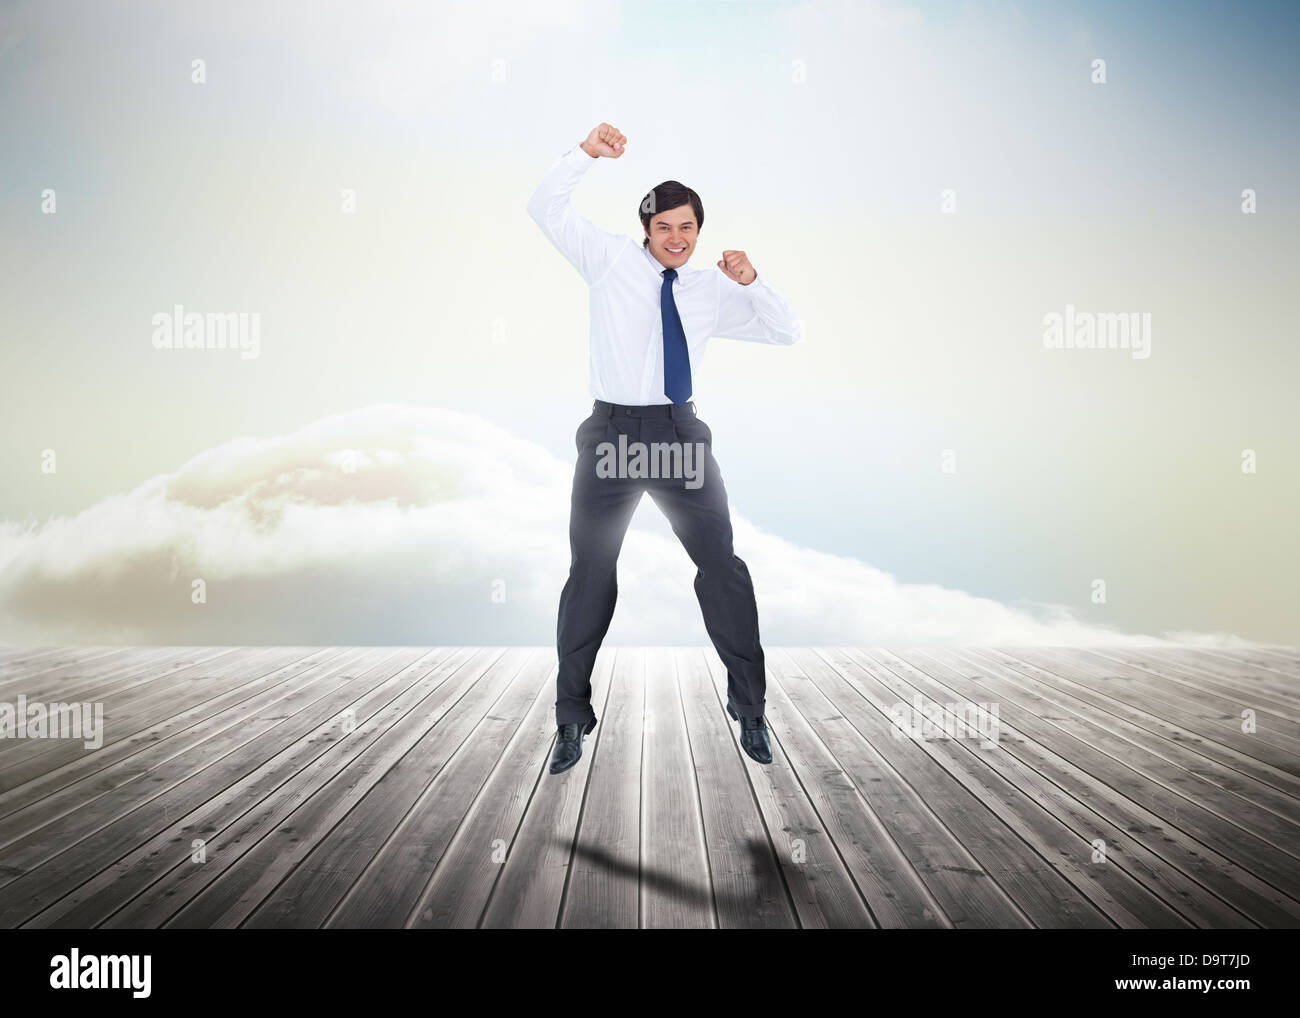 Businessman jumping sur des planches Banque D'Images